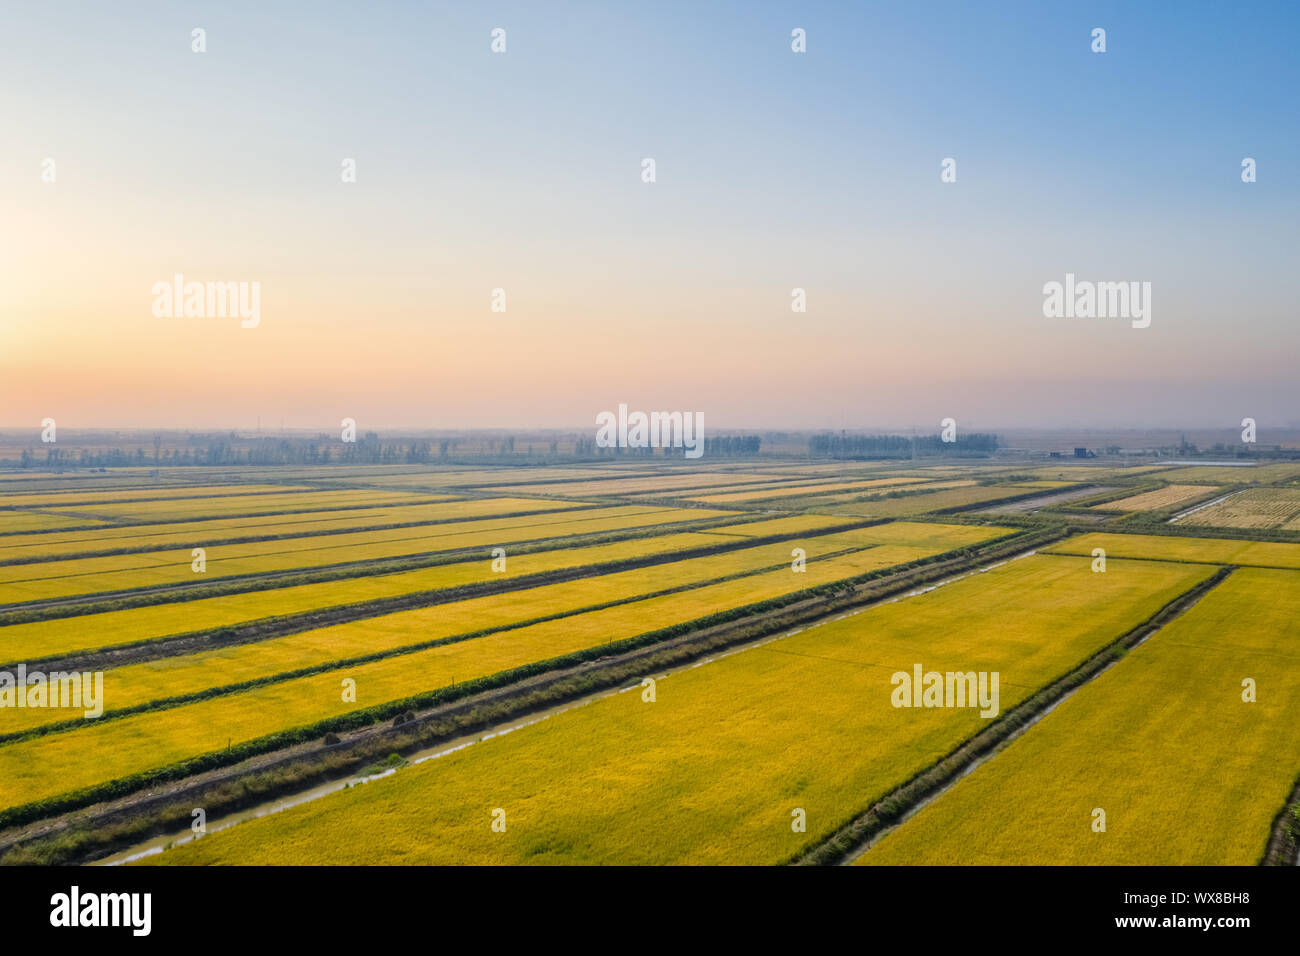 autumn rice fields in sunset Stock Photo